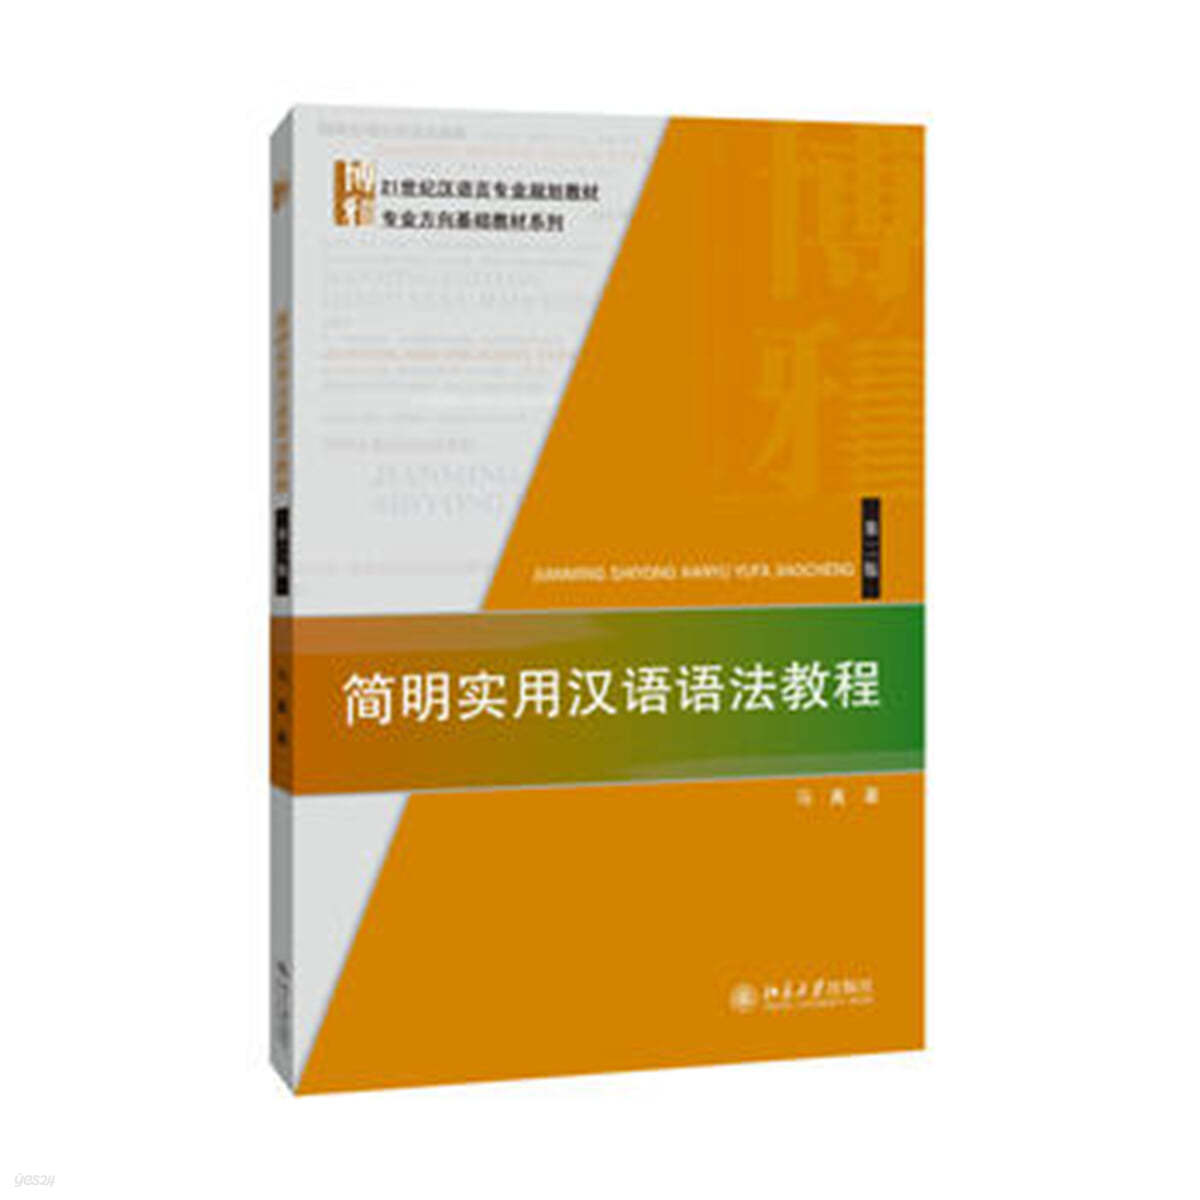 簡明實用漢語語法?程(第2版) 간명실용한어어법교정(제2판)